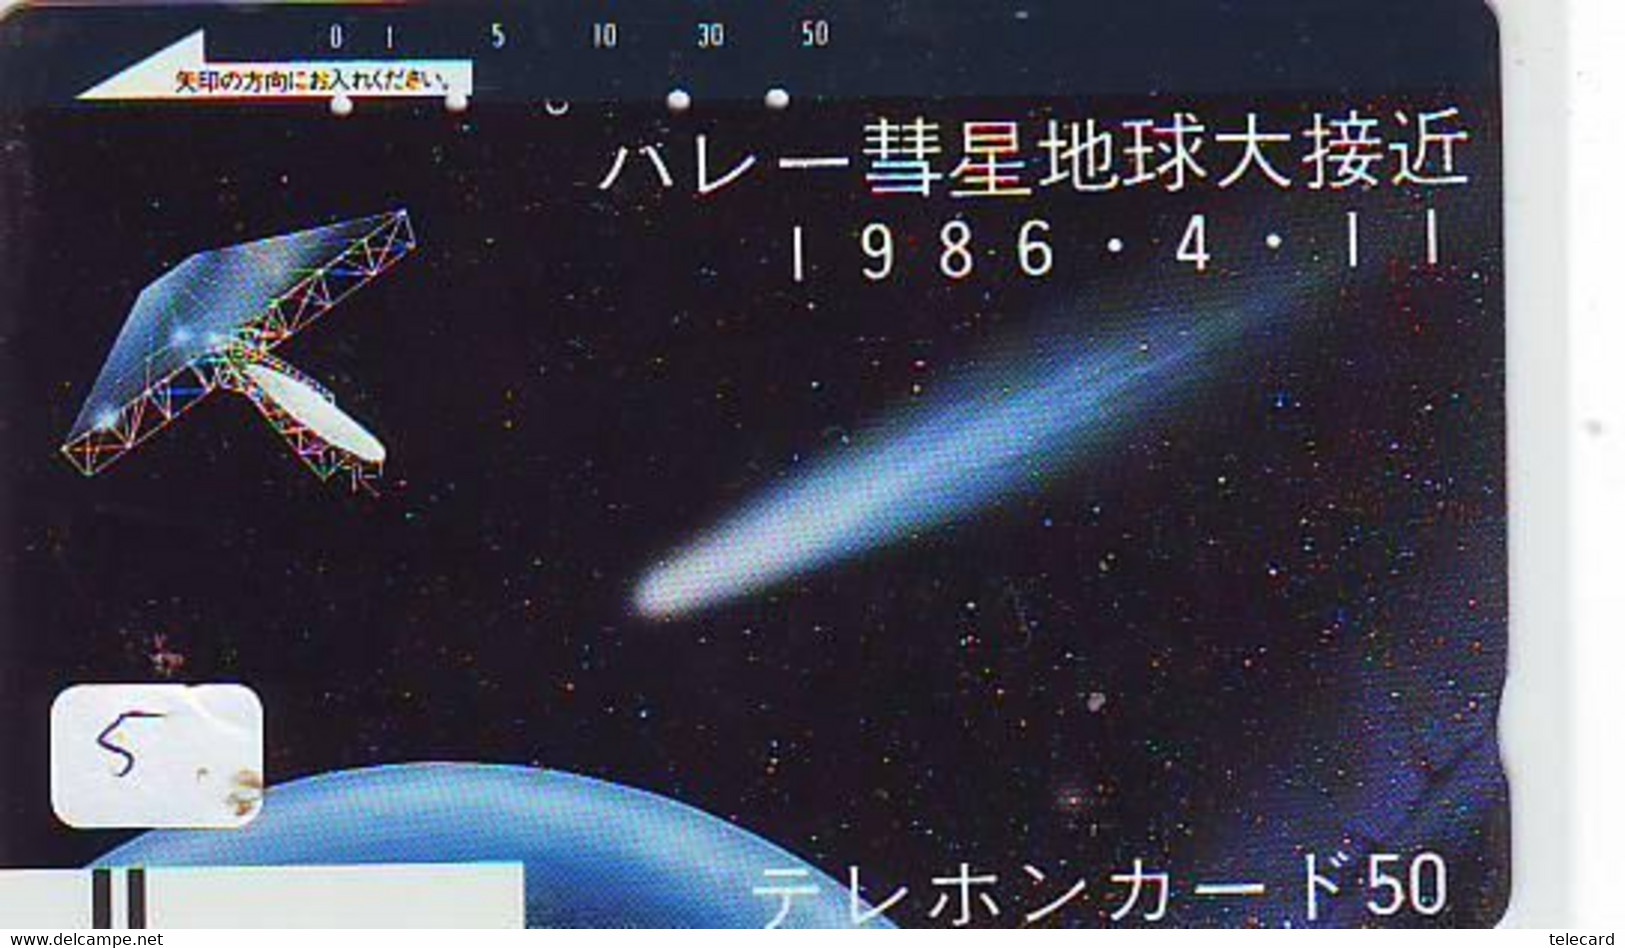 Télécarte COMET (5) COMETE-Japan SPACE * Espace * WELTRAUM *UNIVERSE* PLANET* BALKEN* 110-4408 - Astronomy